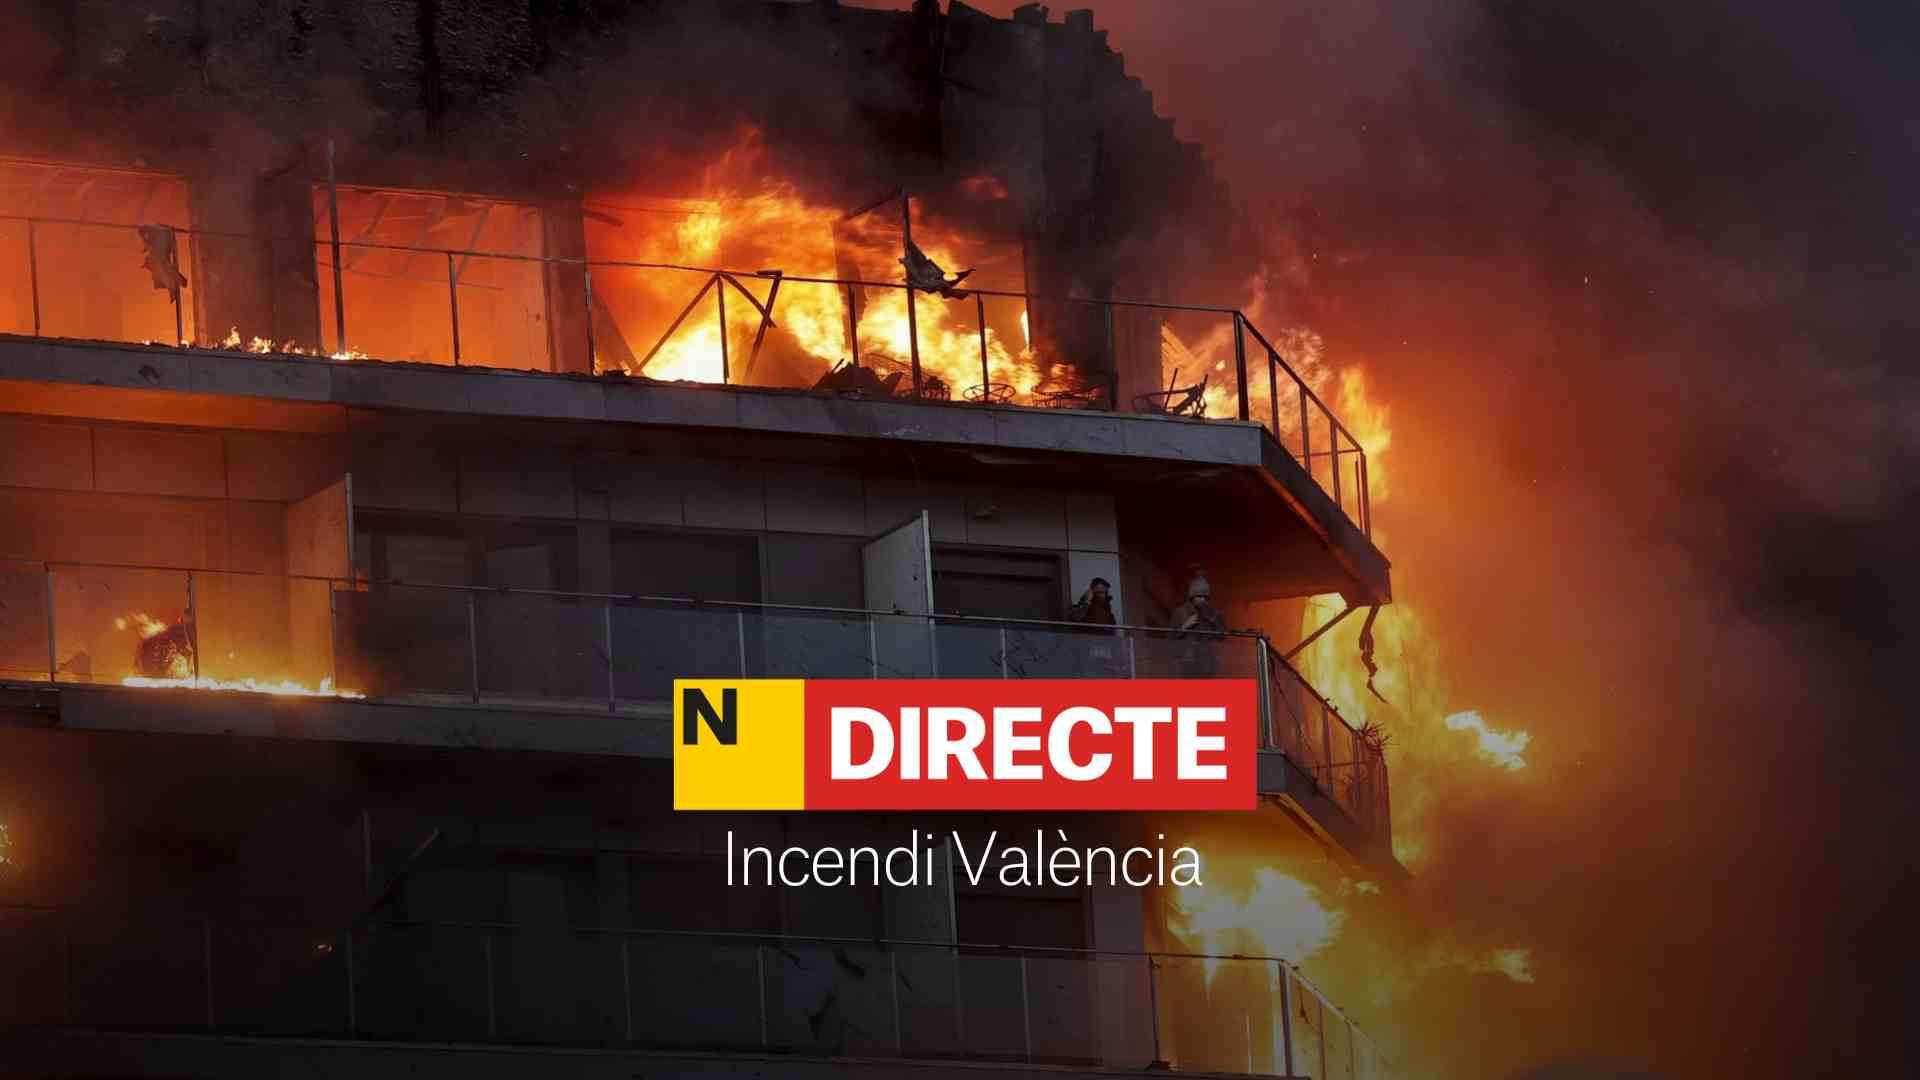 Incendio en Valencia, DIRECTO | Última hora de los heridos, rescatados y fuego en el edificio de Campanar